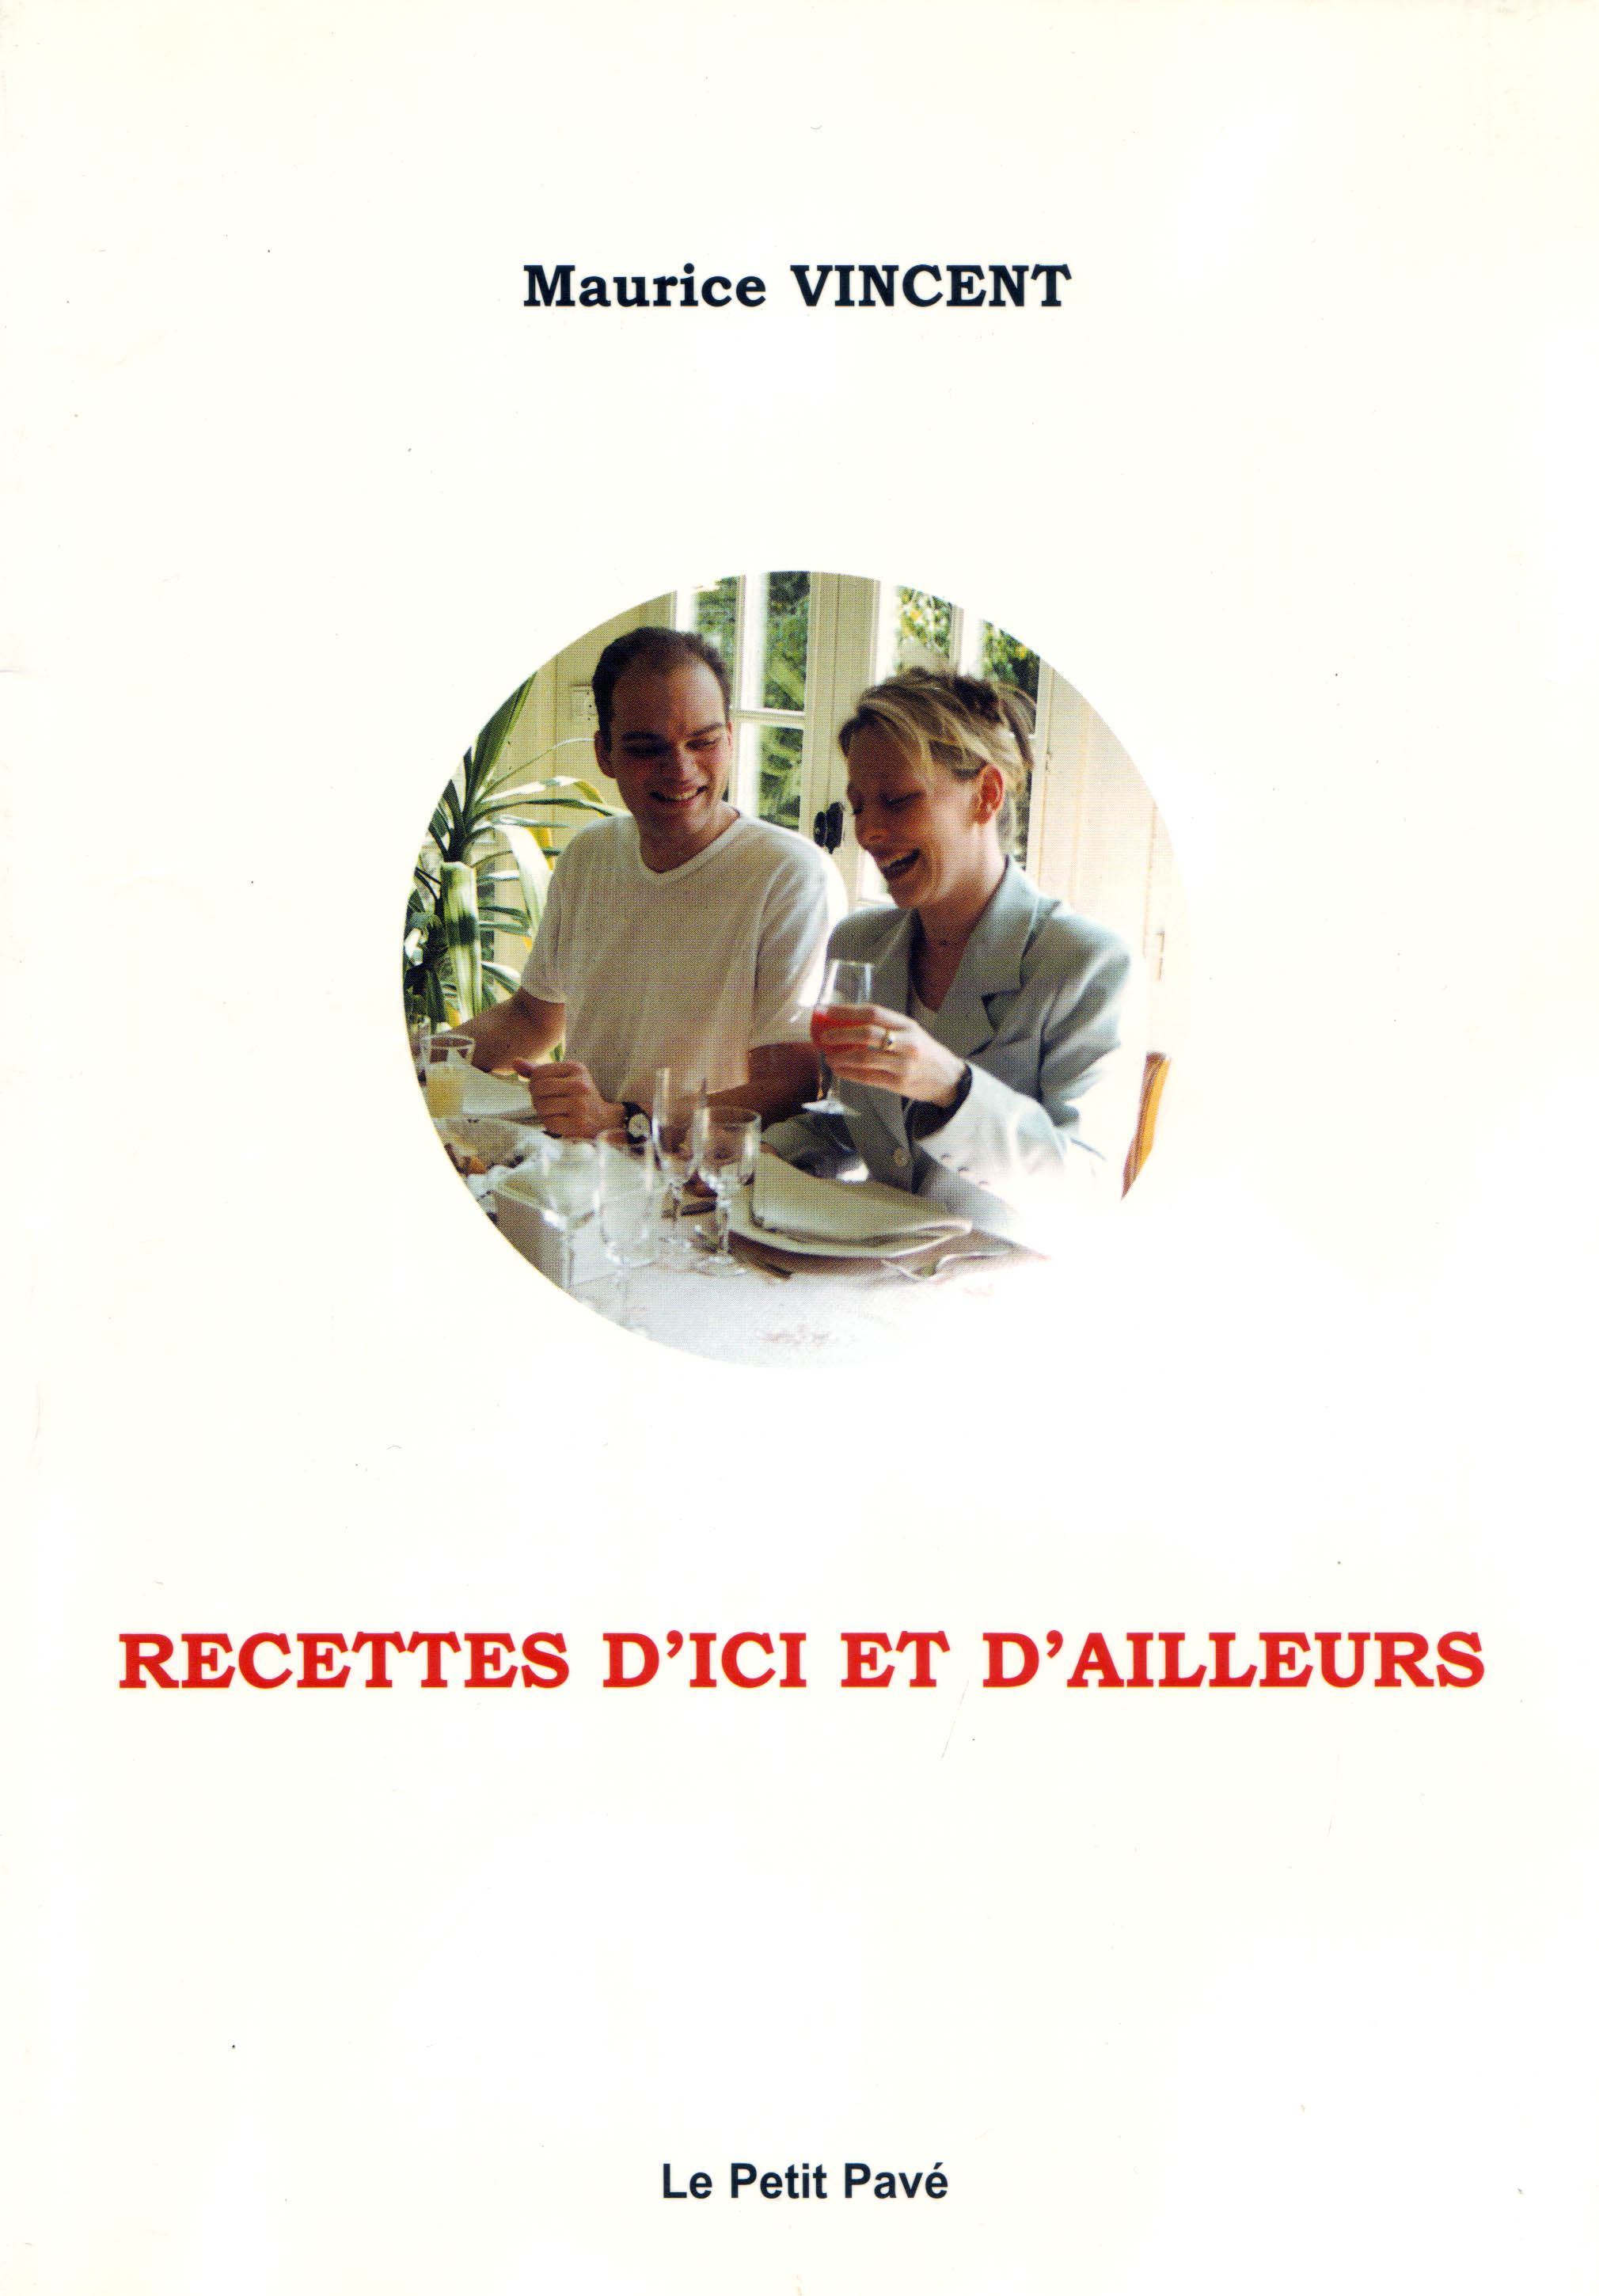 Recettes dici et dailleurs - Photo Maurice Vincent.jpg